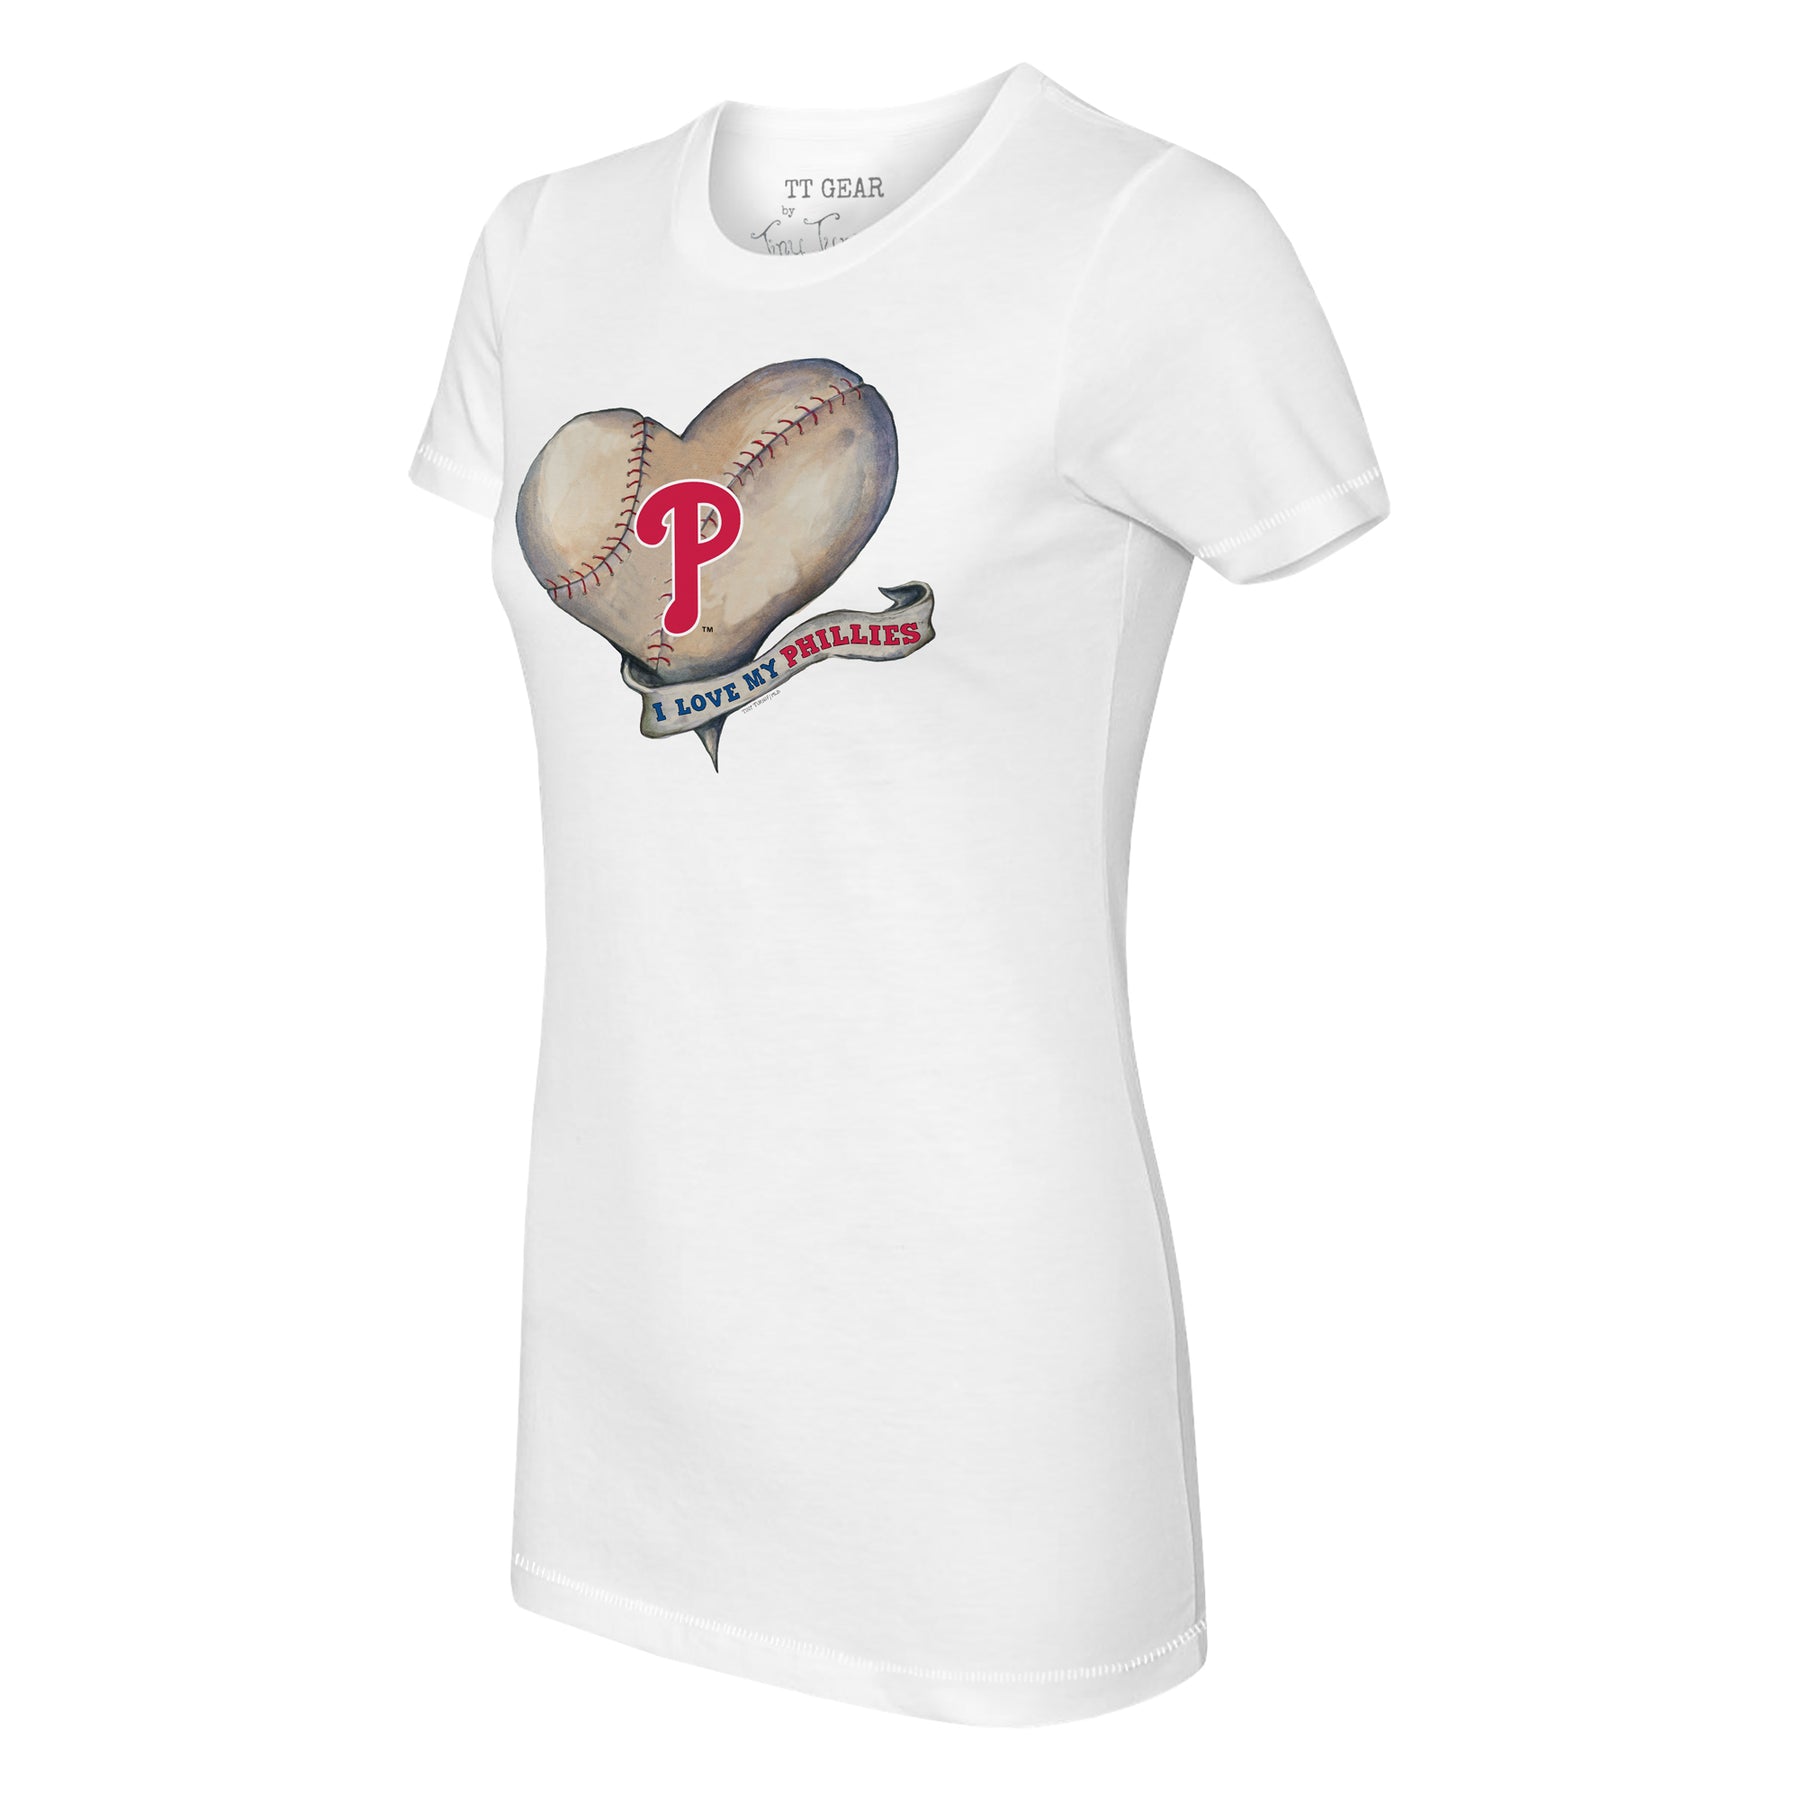 I Love Baseball, Philadelphia, Women's T-Shirt